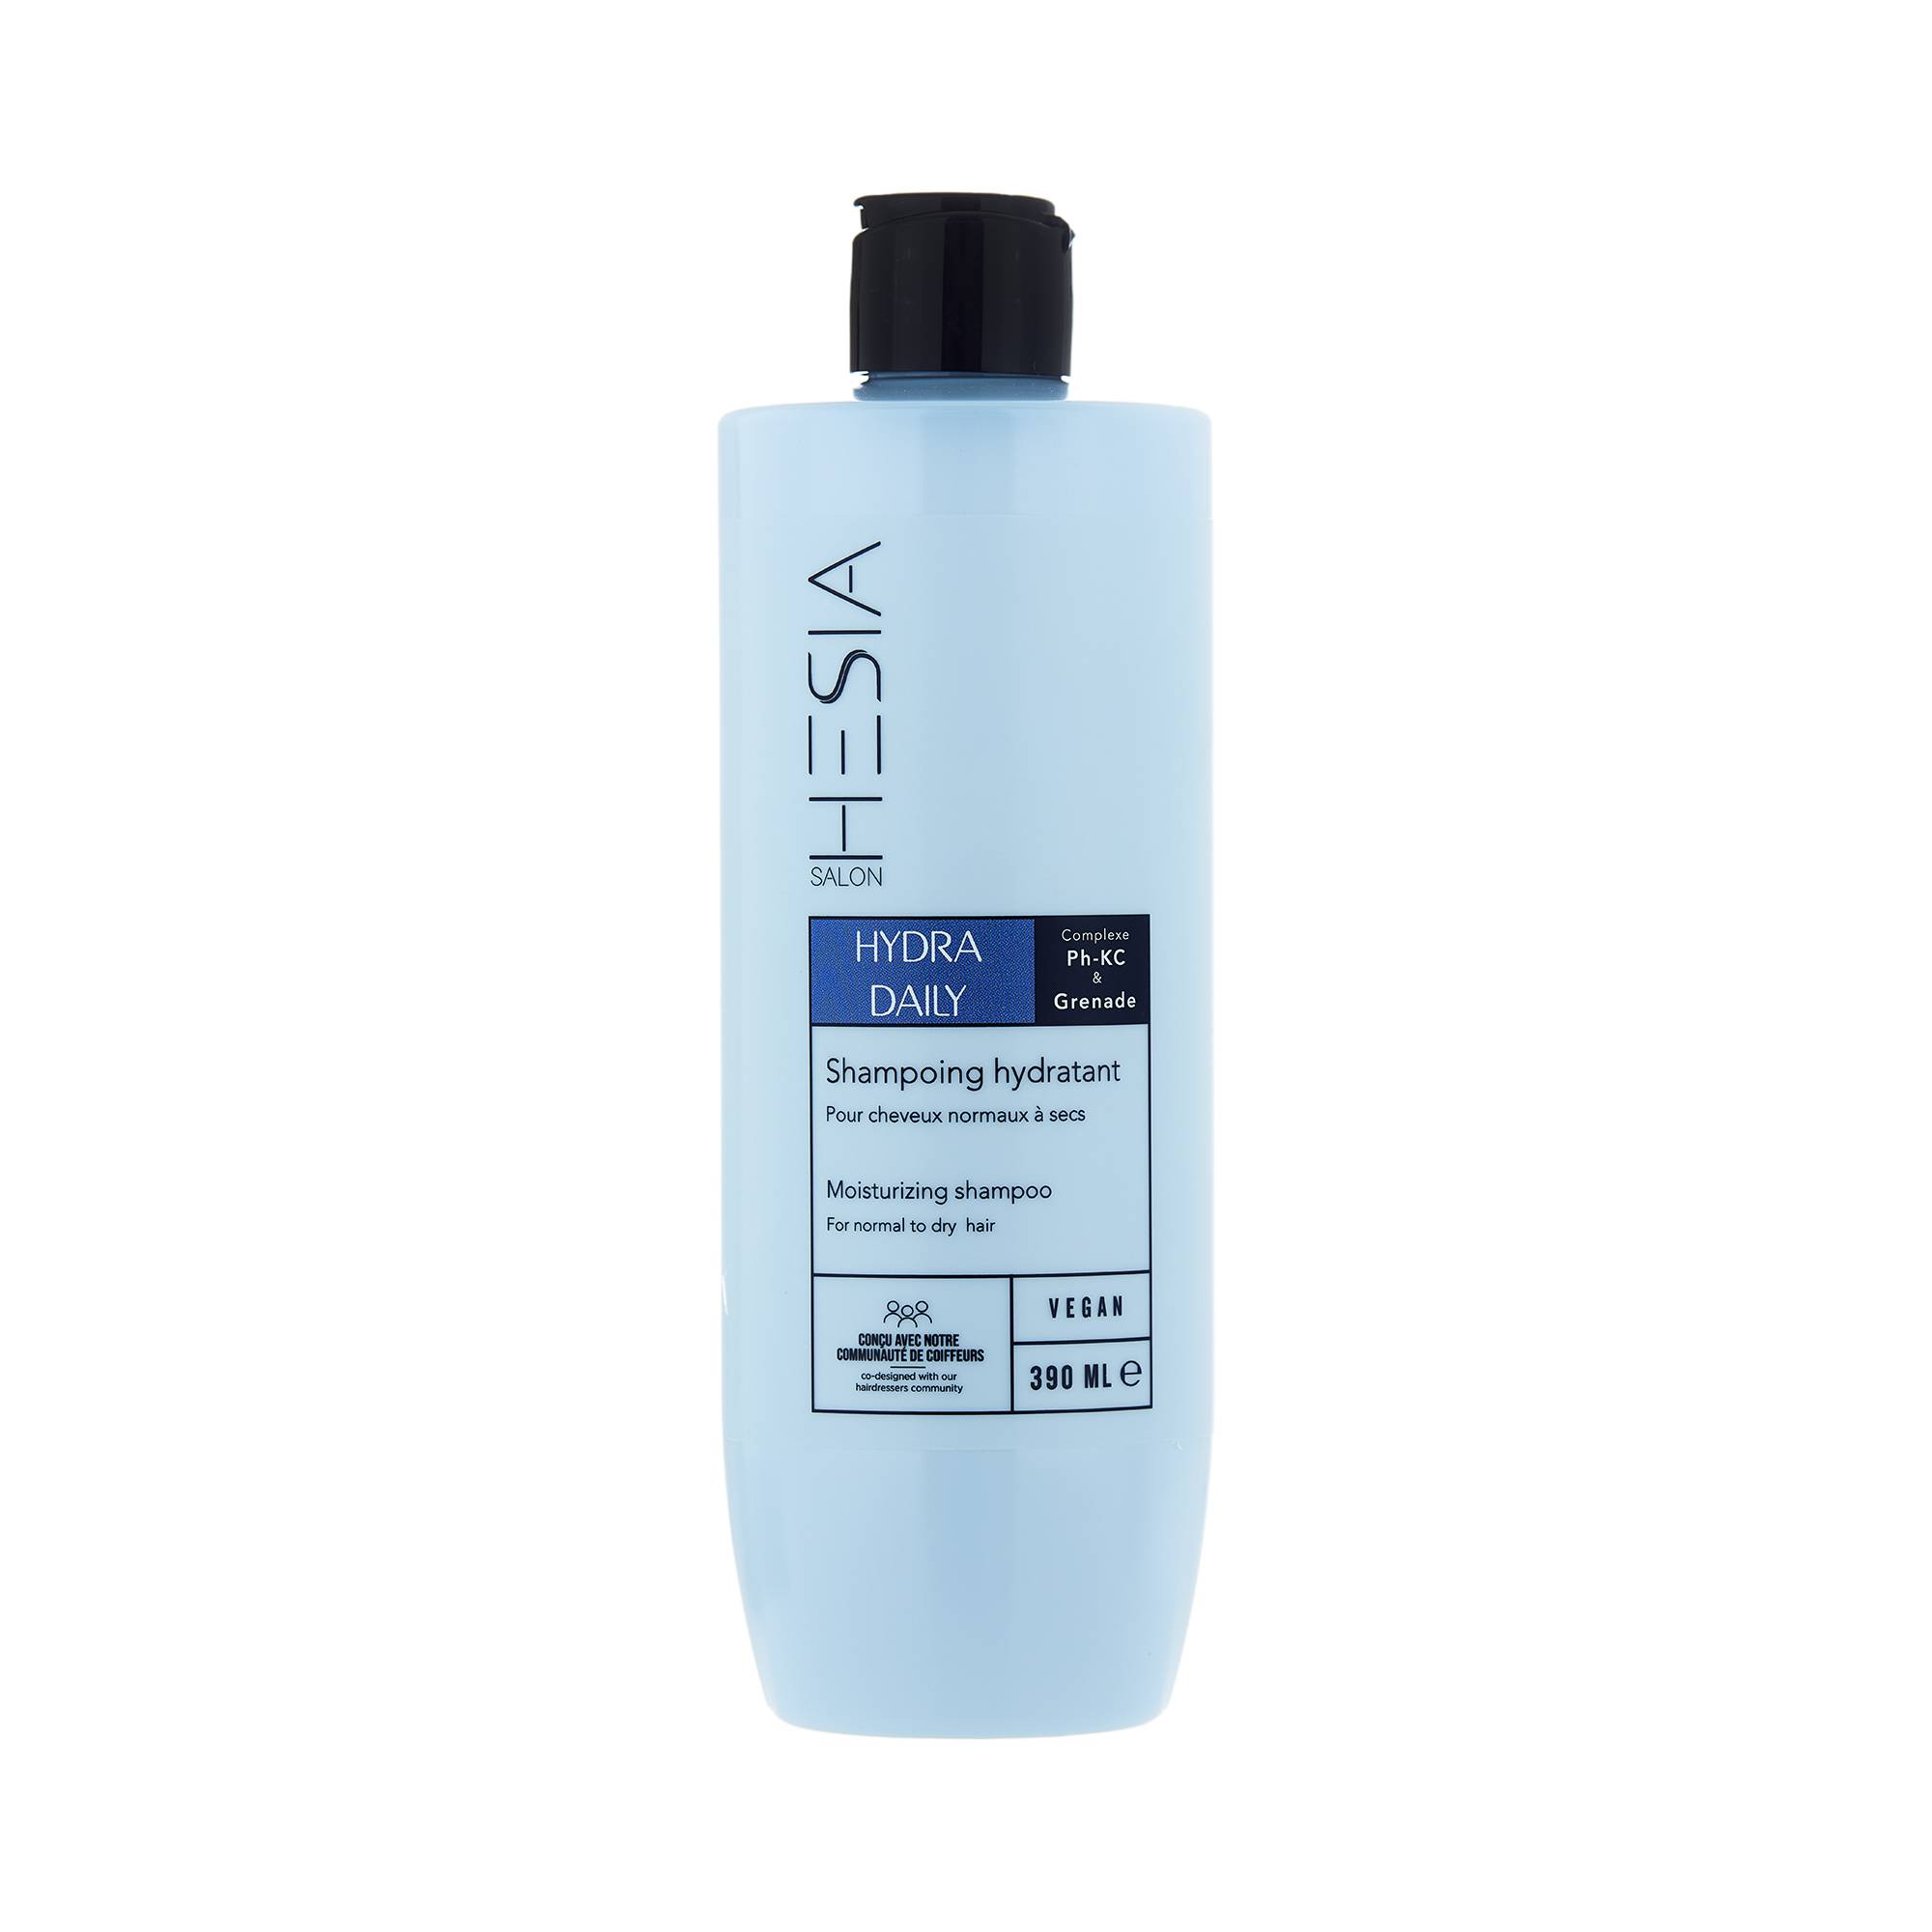 Shampoing hydratant Hydra Daily de la marque HESIA Salon Contenance 390ml - 1